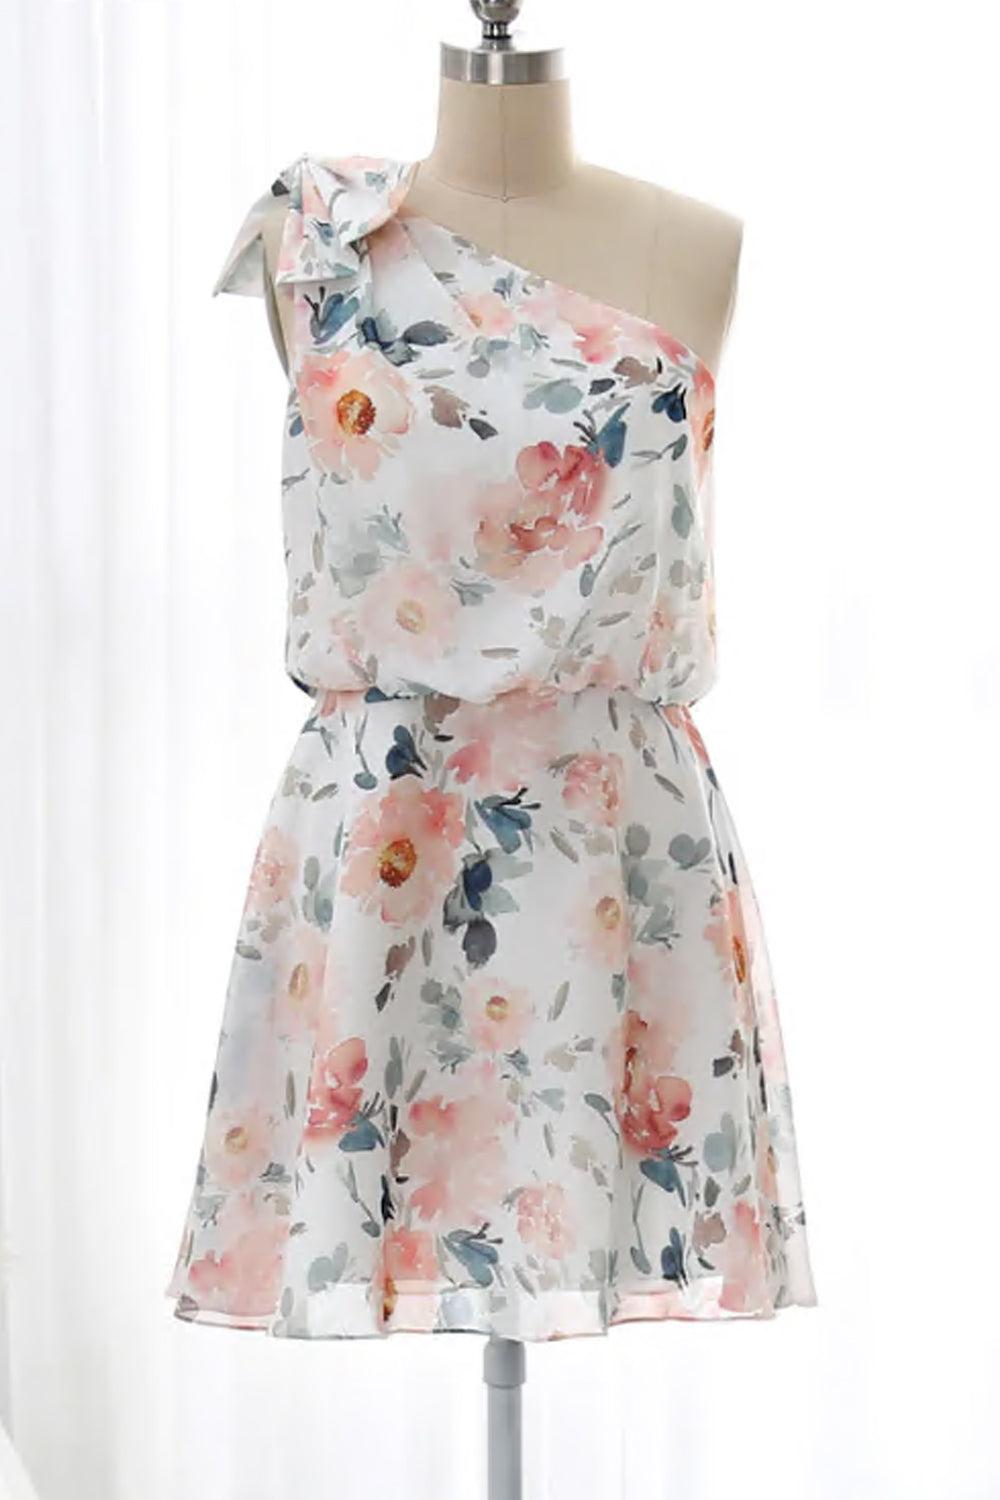 Formelles Kleid mit Blumenmuster und einer Schulter in Teelänge